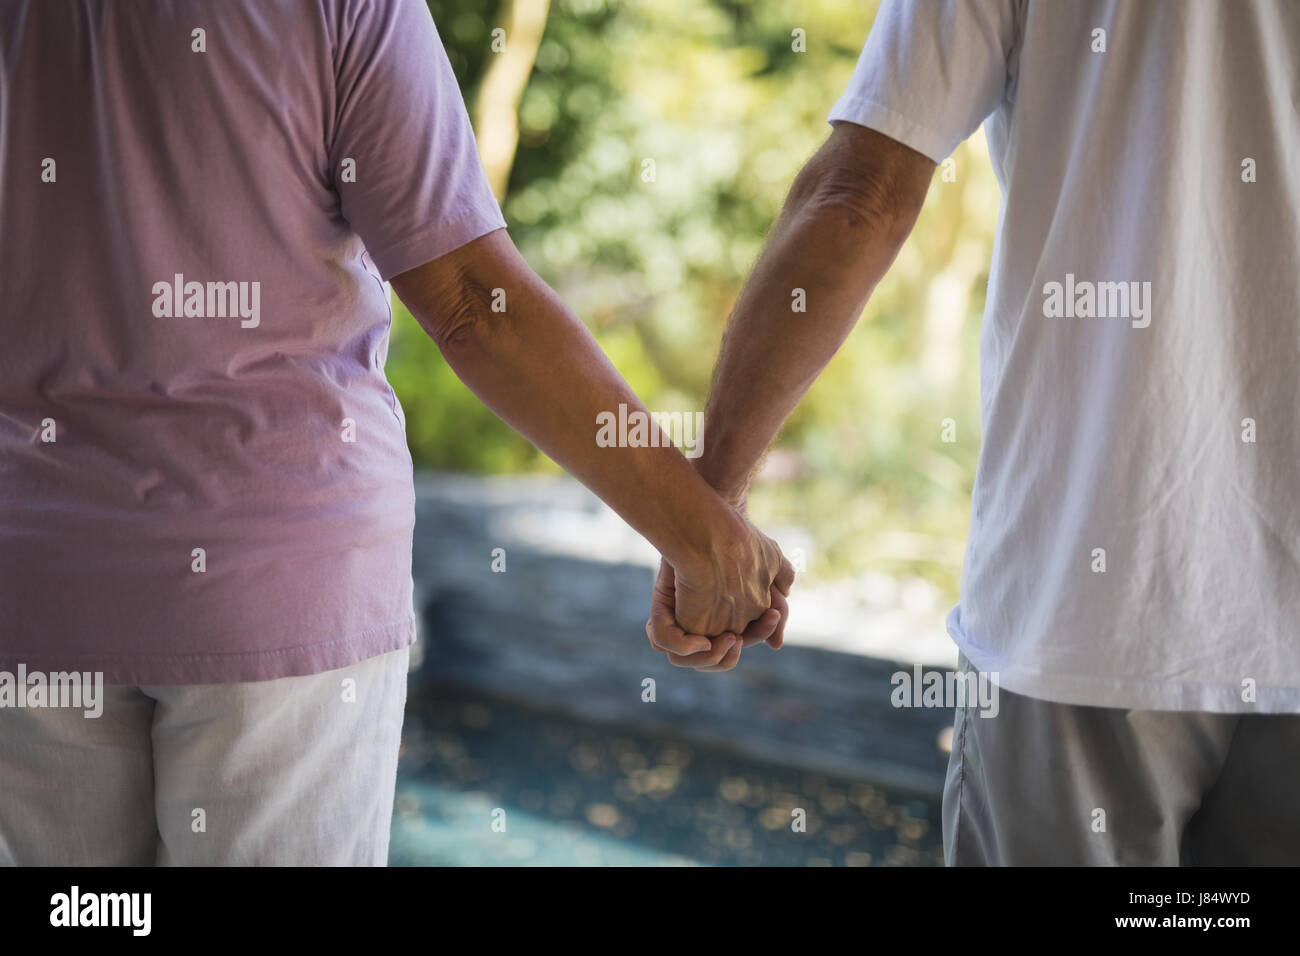 Mittleren Bereich der älteres paar zusammenstehen und Hand in Hand Stockfoto